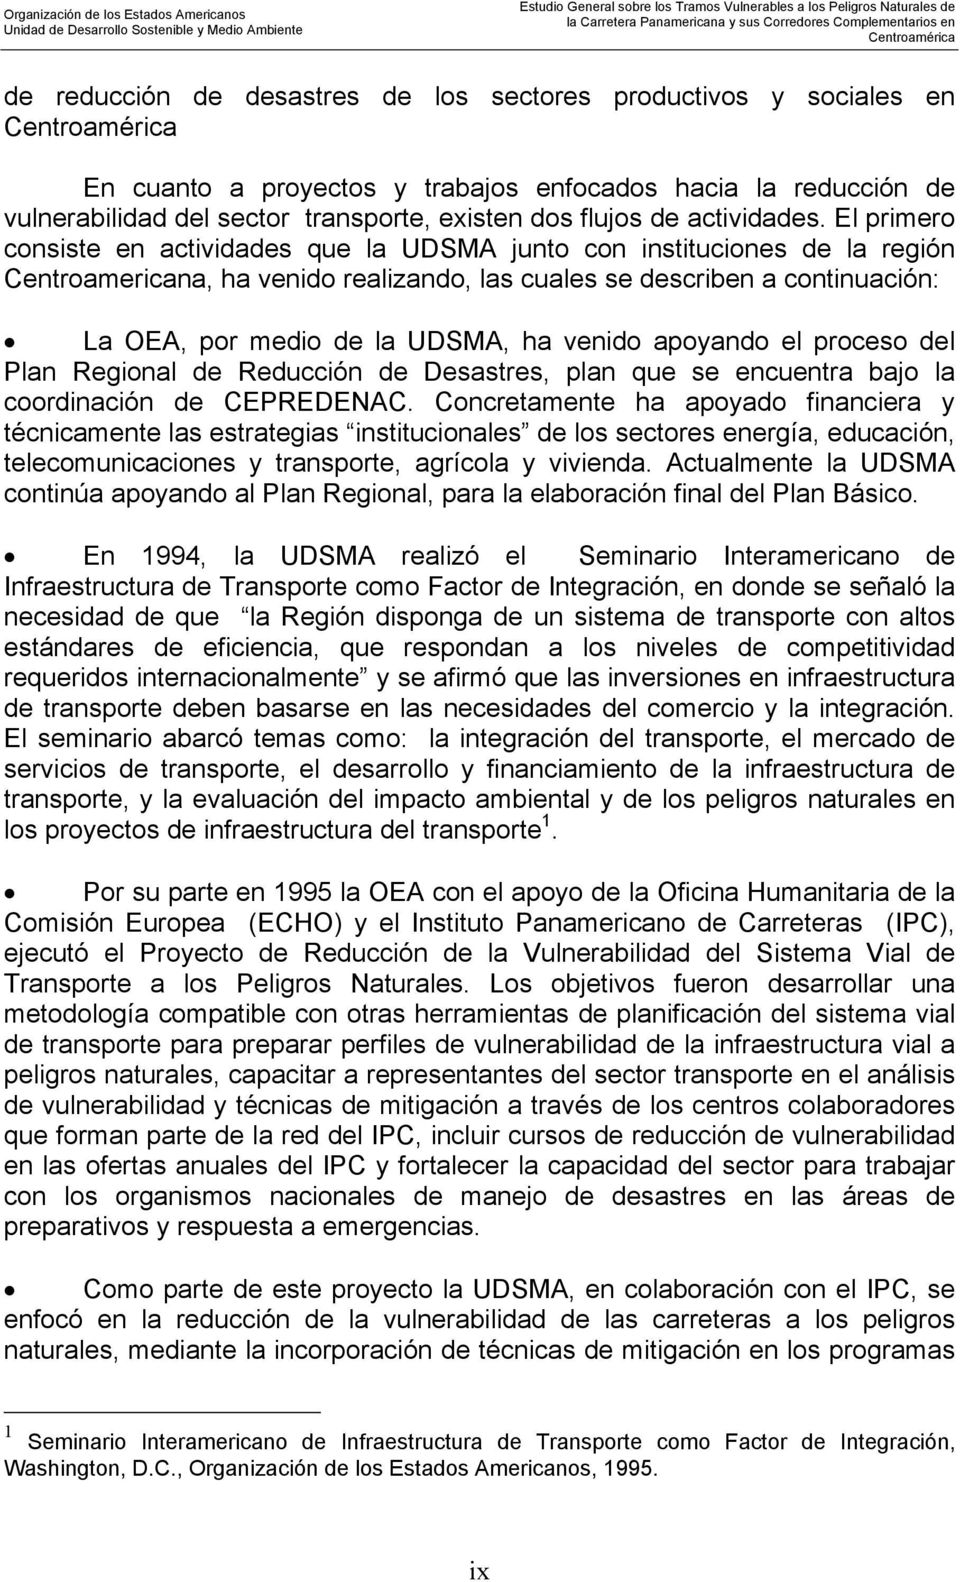 El primero consiste en actividades que la UDSMA junto con instituciones de la región Centroamericana, ha venido realizando, las cuales se describen a continuación: La OEA, por medio de la UDSMA, ha